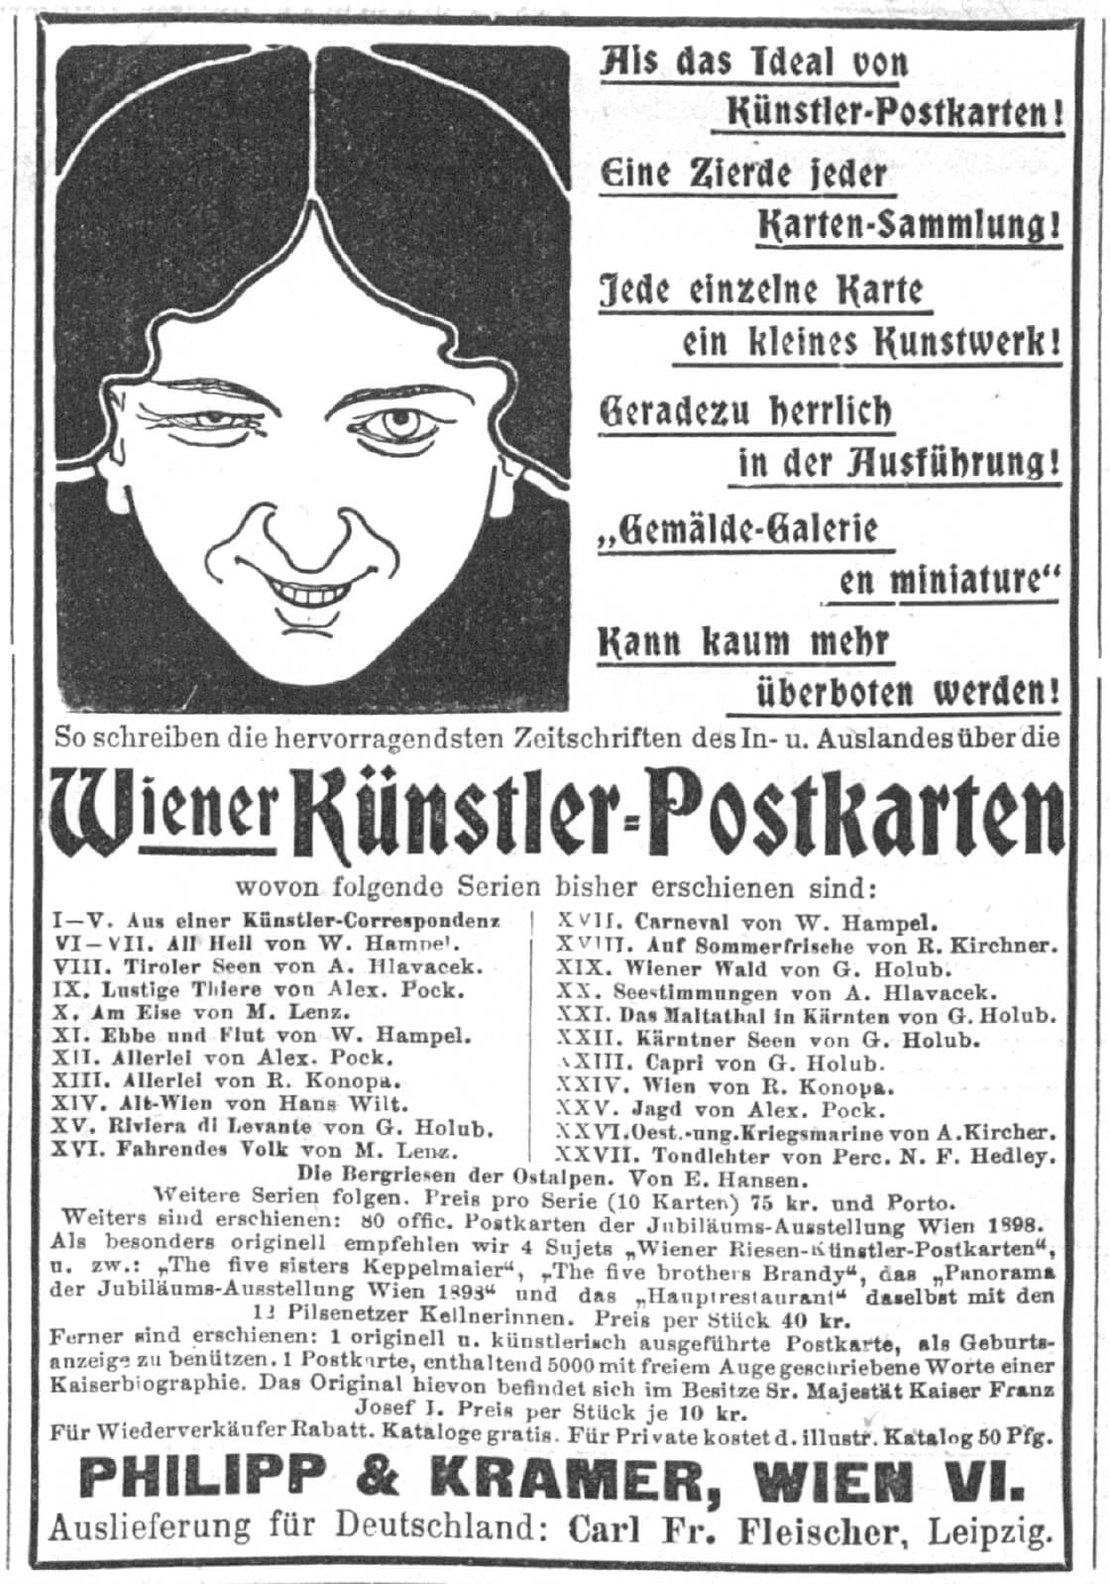 Annonce von Philipp & Kramer in der Österreichischen Illustrierten Zeitung vom 2. Oktober 1898, Anno / ÖNB 